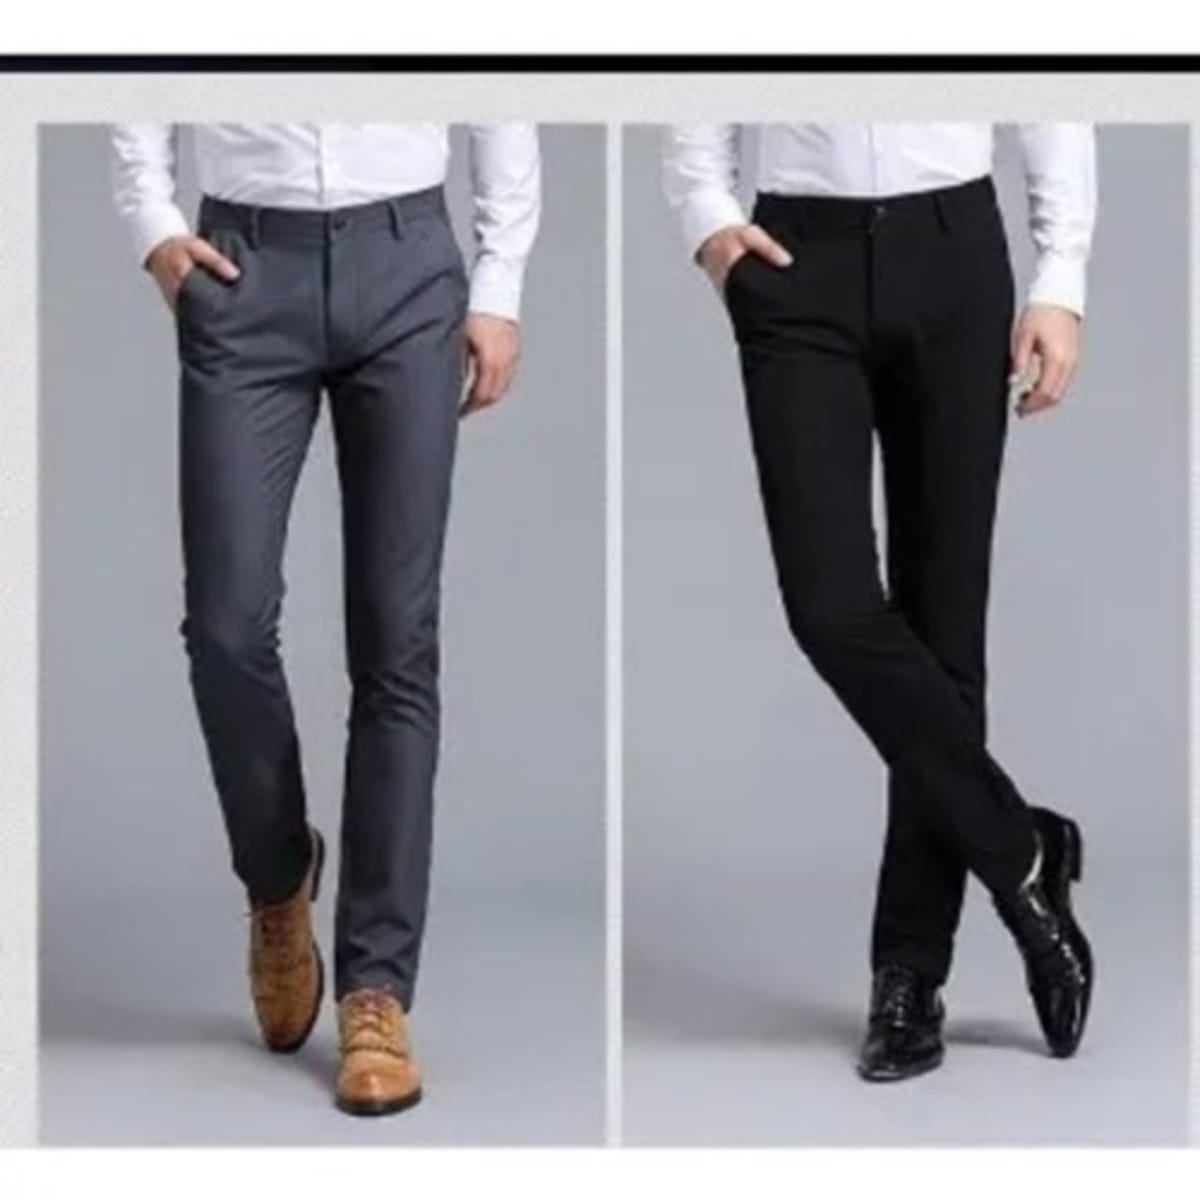 Suit Trousers For Men - Black & Grey - 2pcs